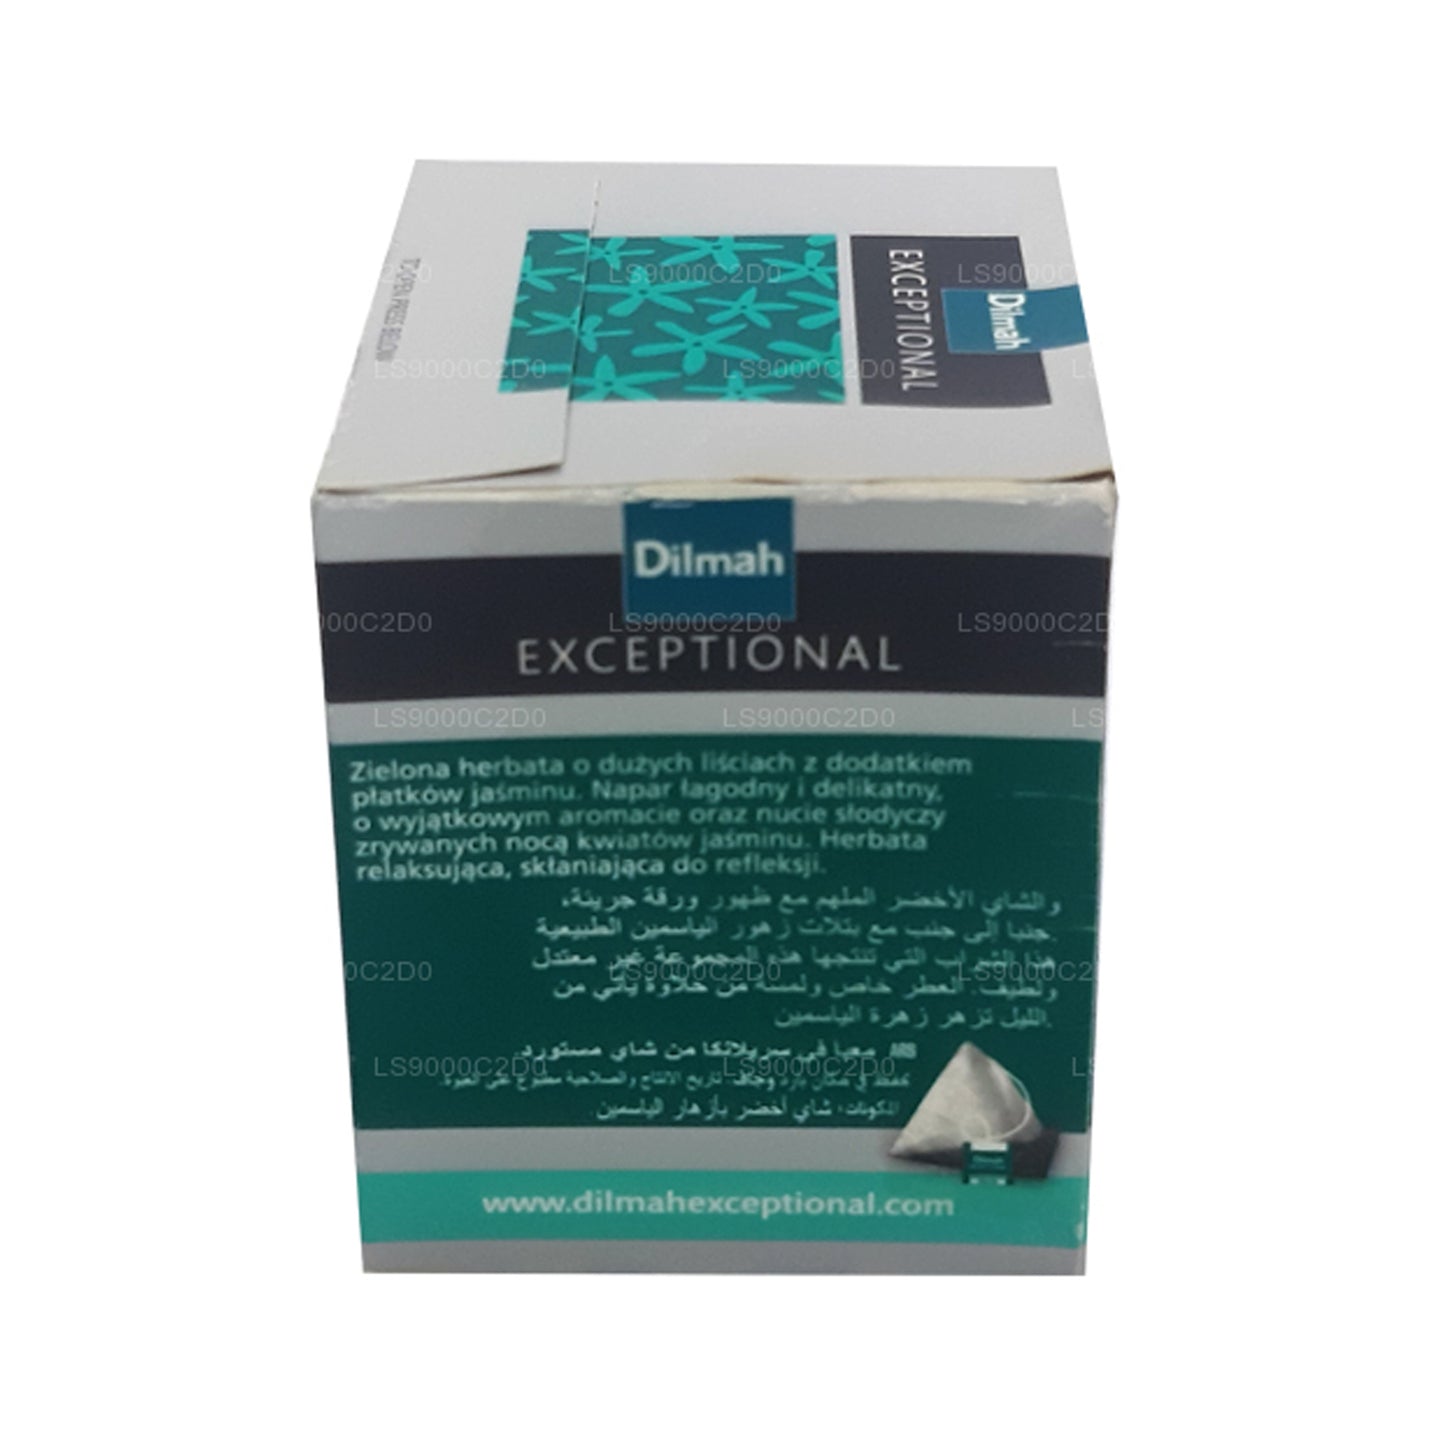 Dilmah Außergewöhnlicher duftender Jasmin- und grüner Echtblatt-Tee (40 g) 20 Teebeutel